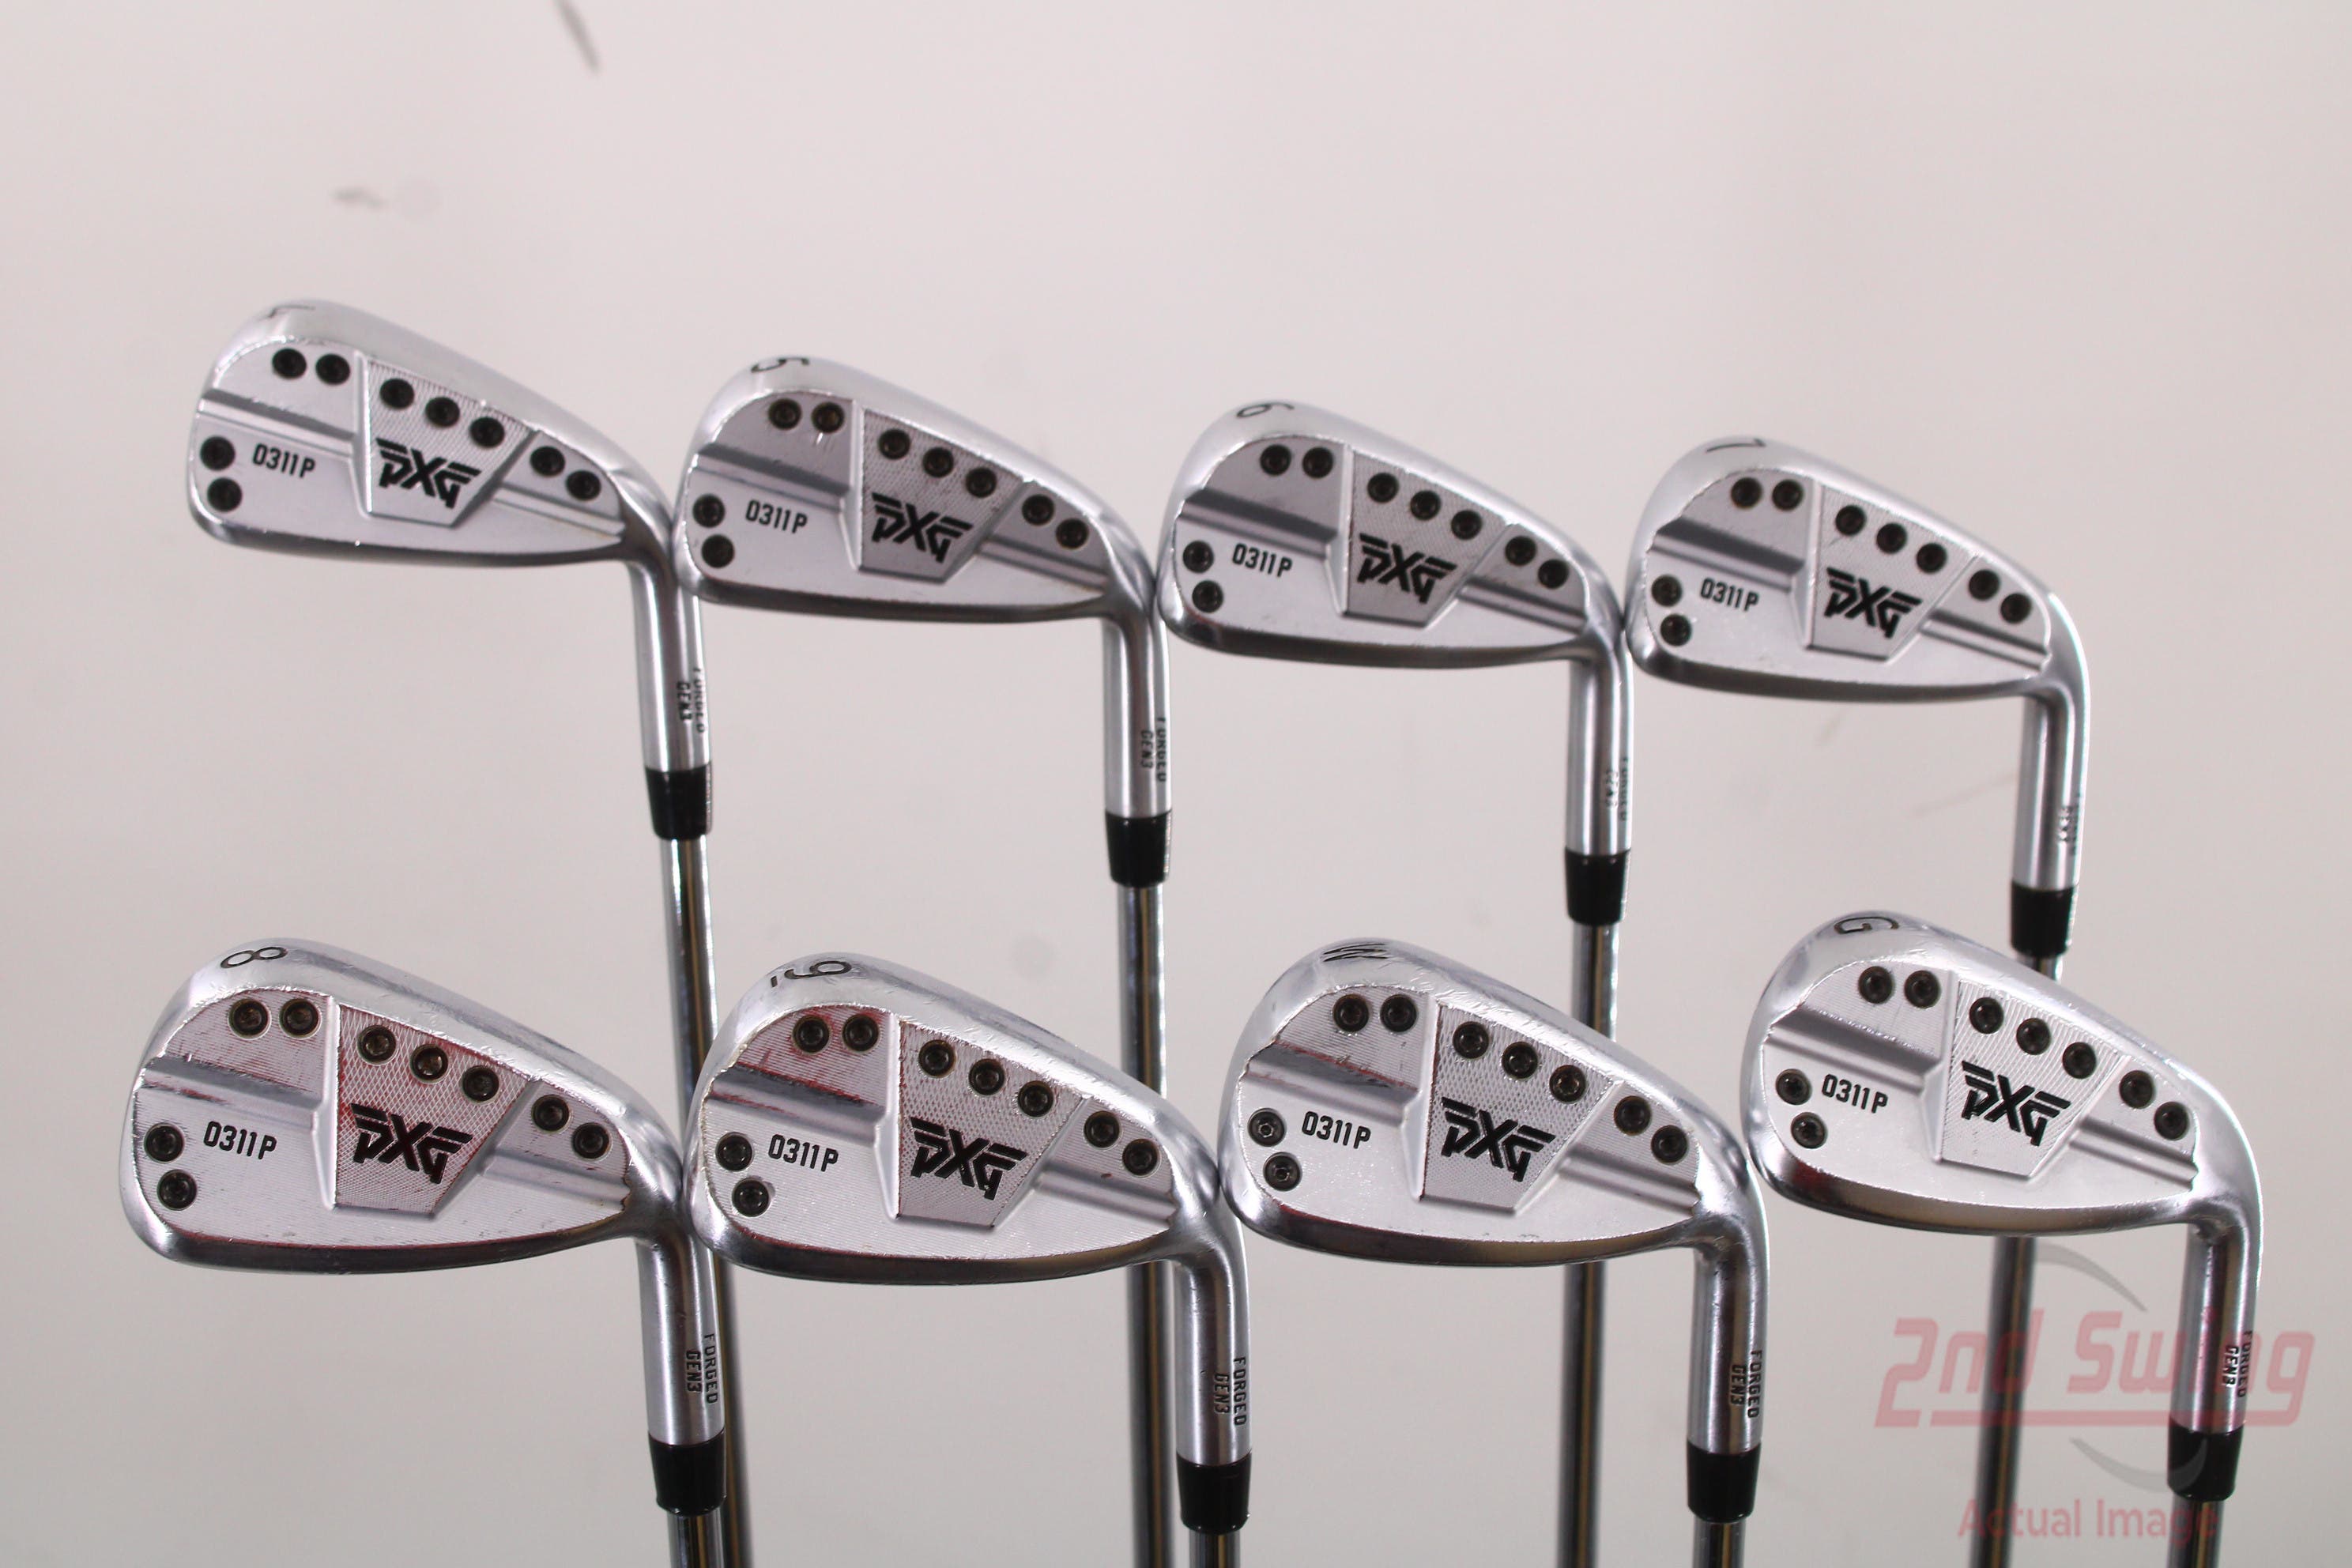 PXG 0311 P GEN3 Iron Set | 2nd Swing Golf